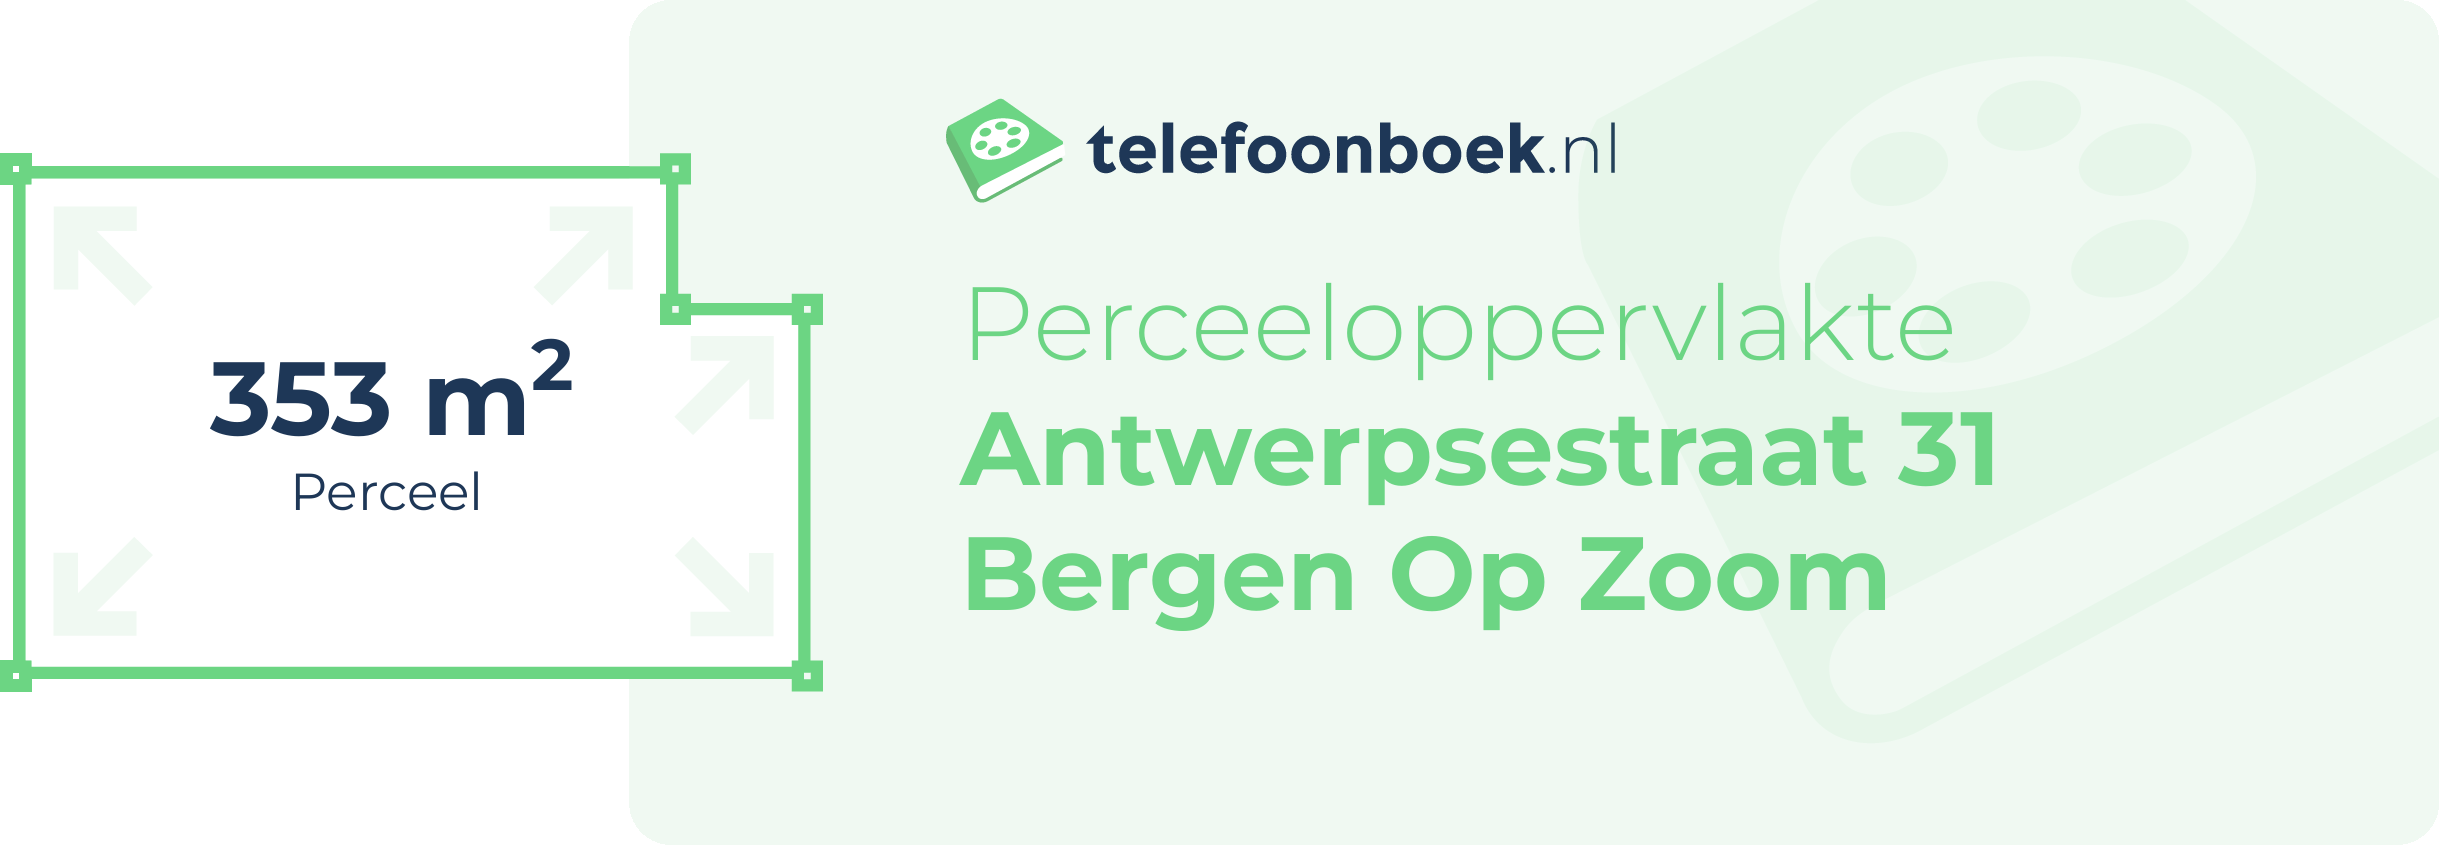 Perceeloppervlakte Antwerpsestraat 31 Bergen Op Zoom